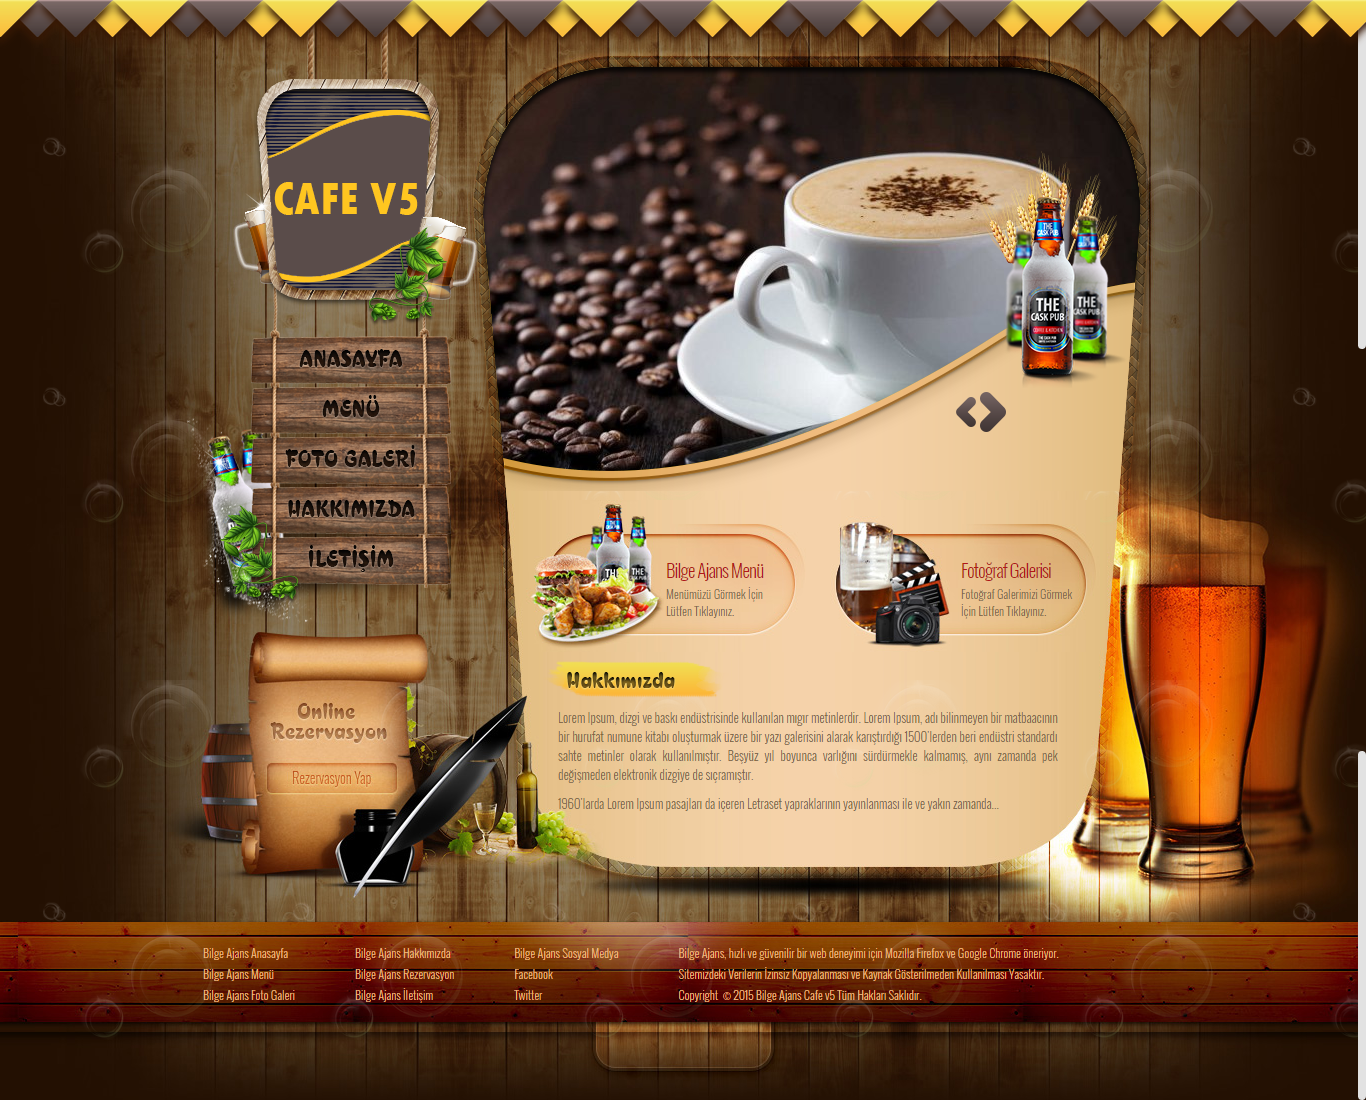 Bilge Ajans Cafe V5 Tasarımı